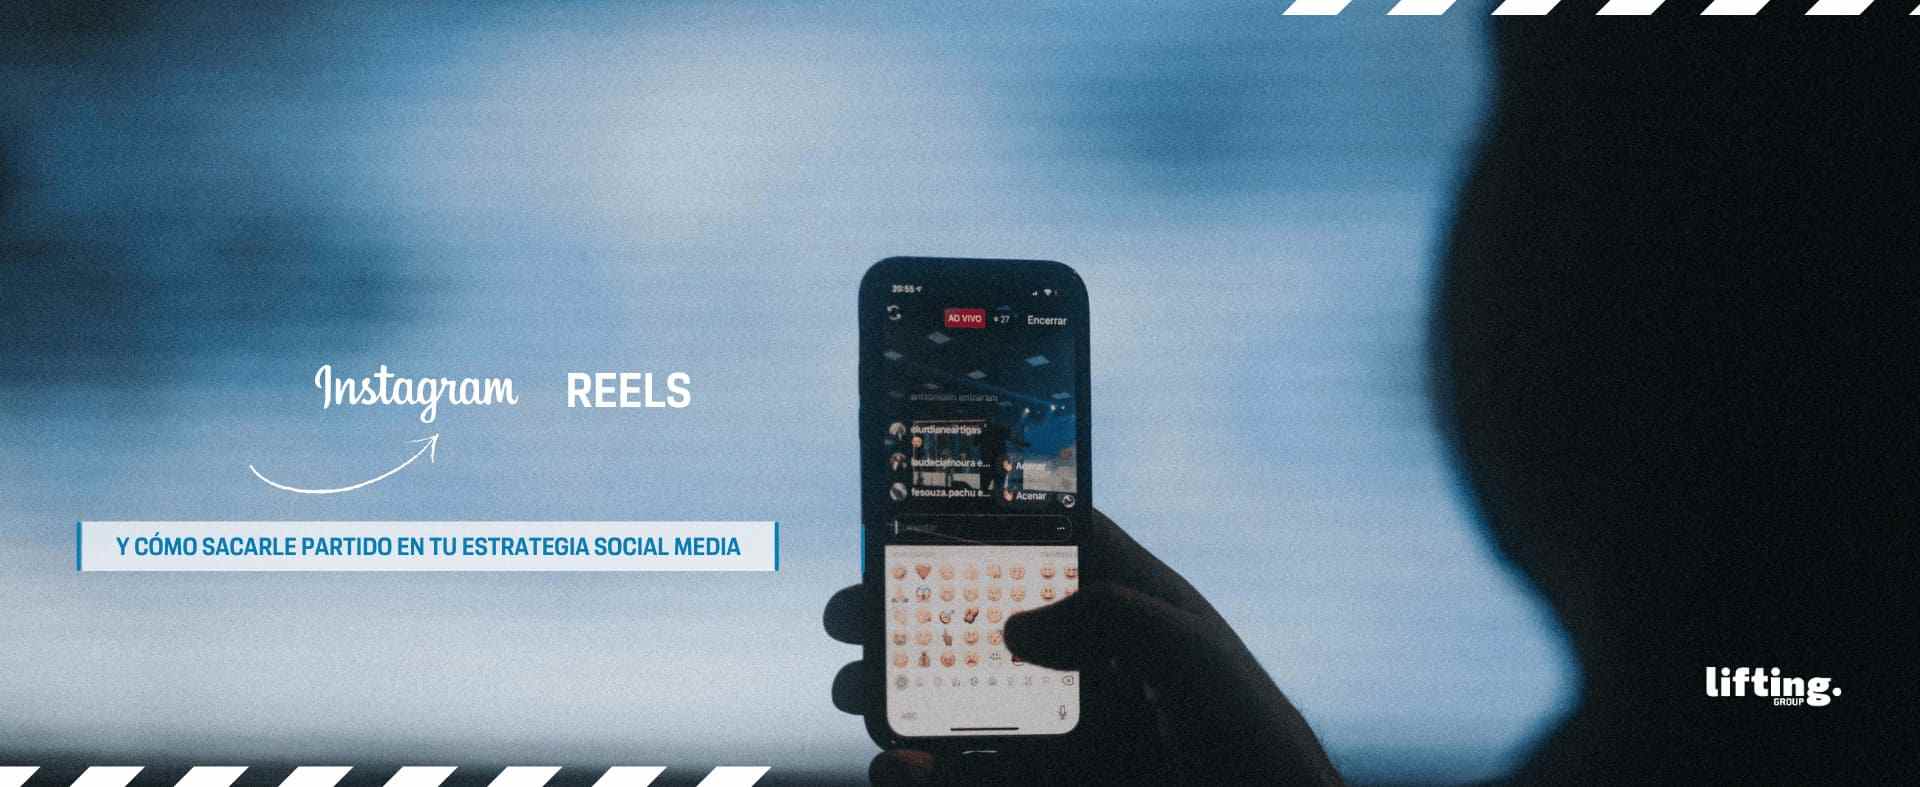 ¿Qué es Instagram Reels y cómo sacarle partido en tu estrategia social media?